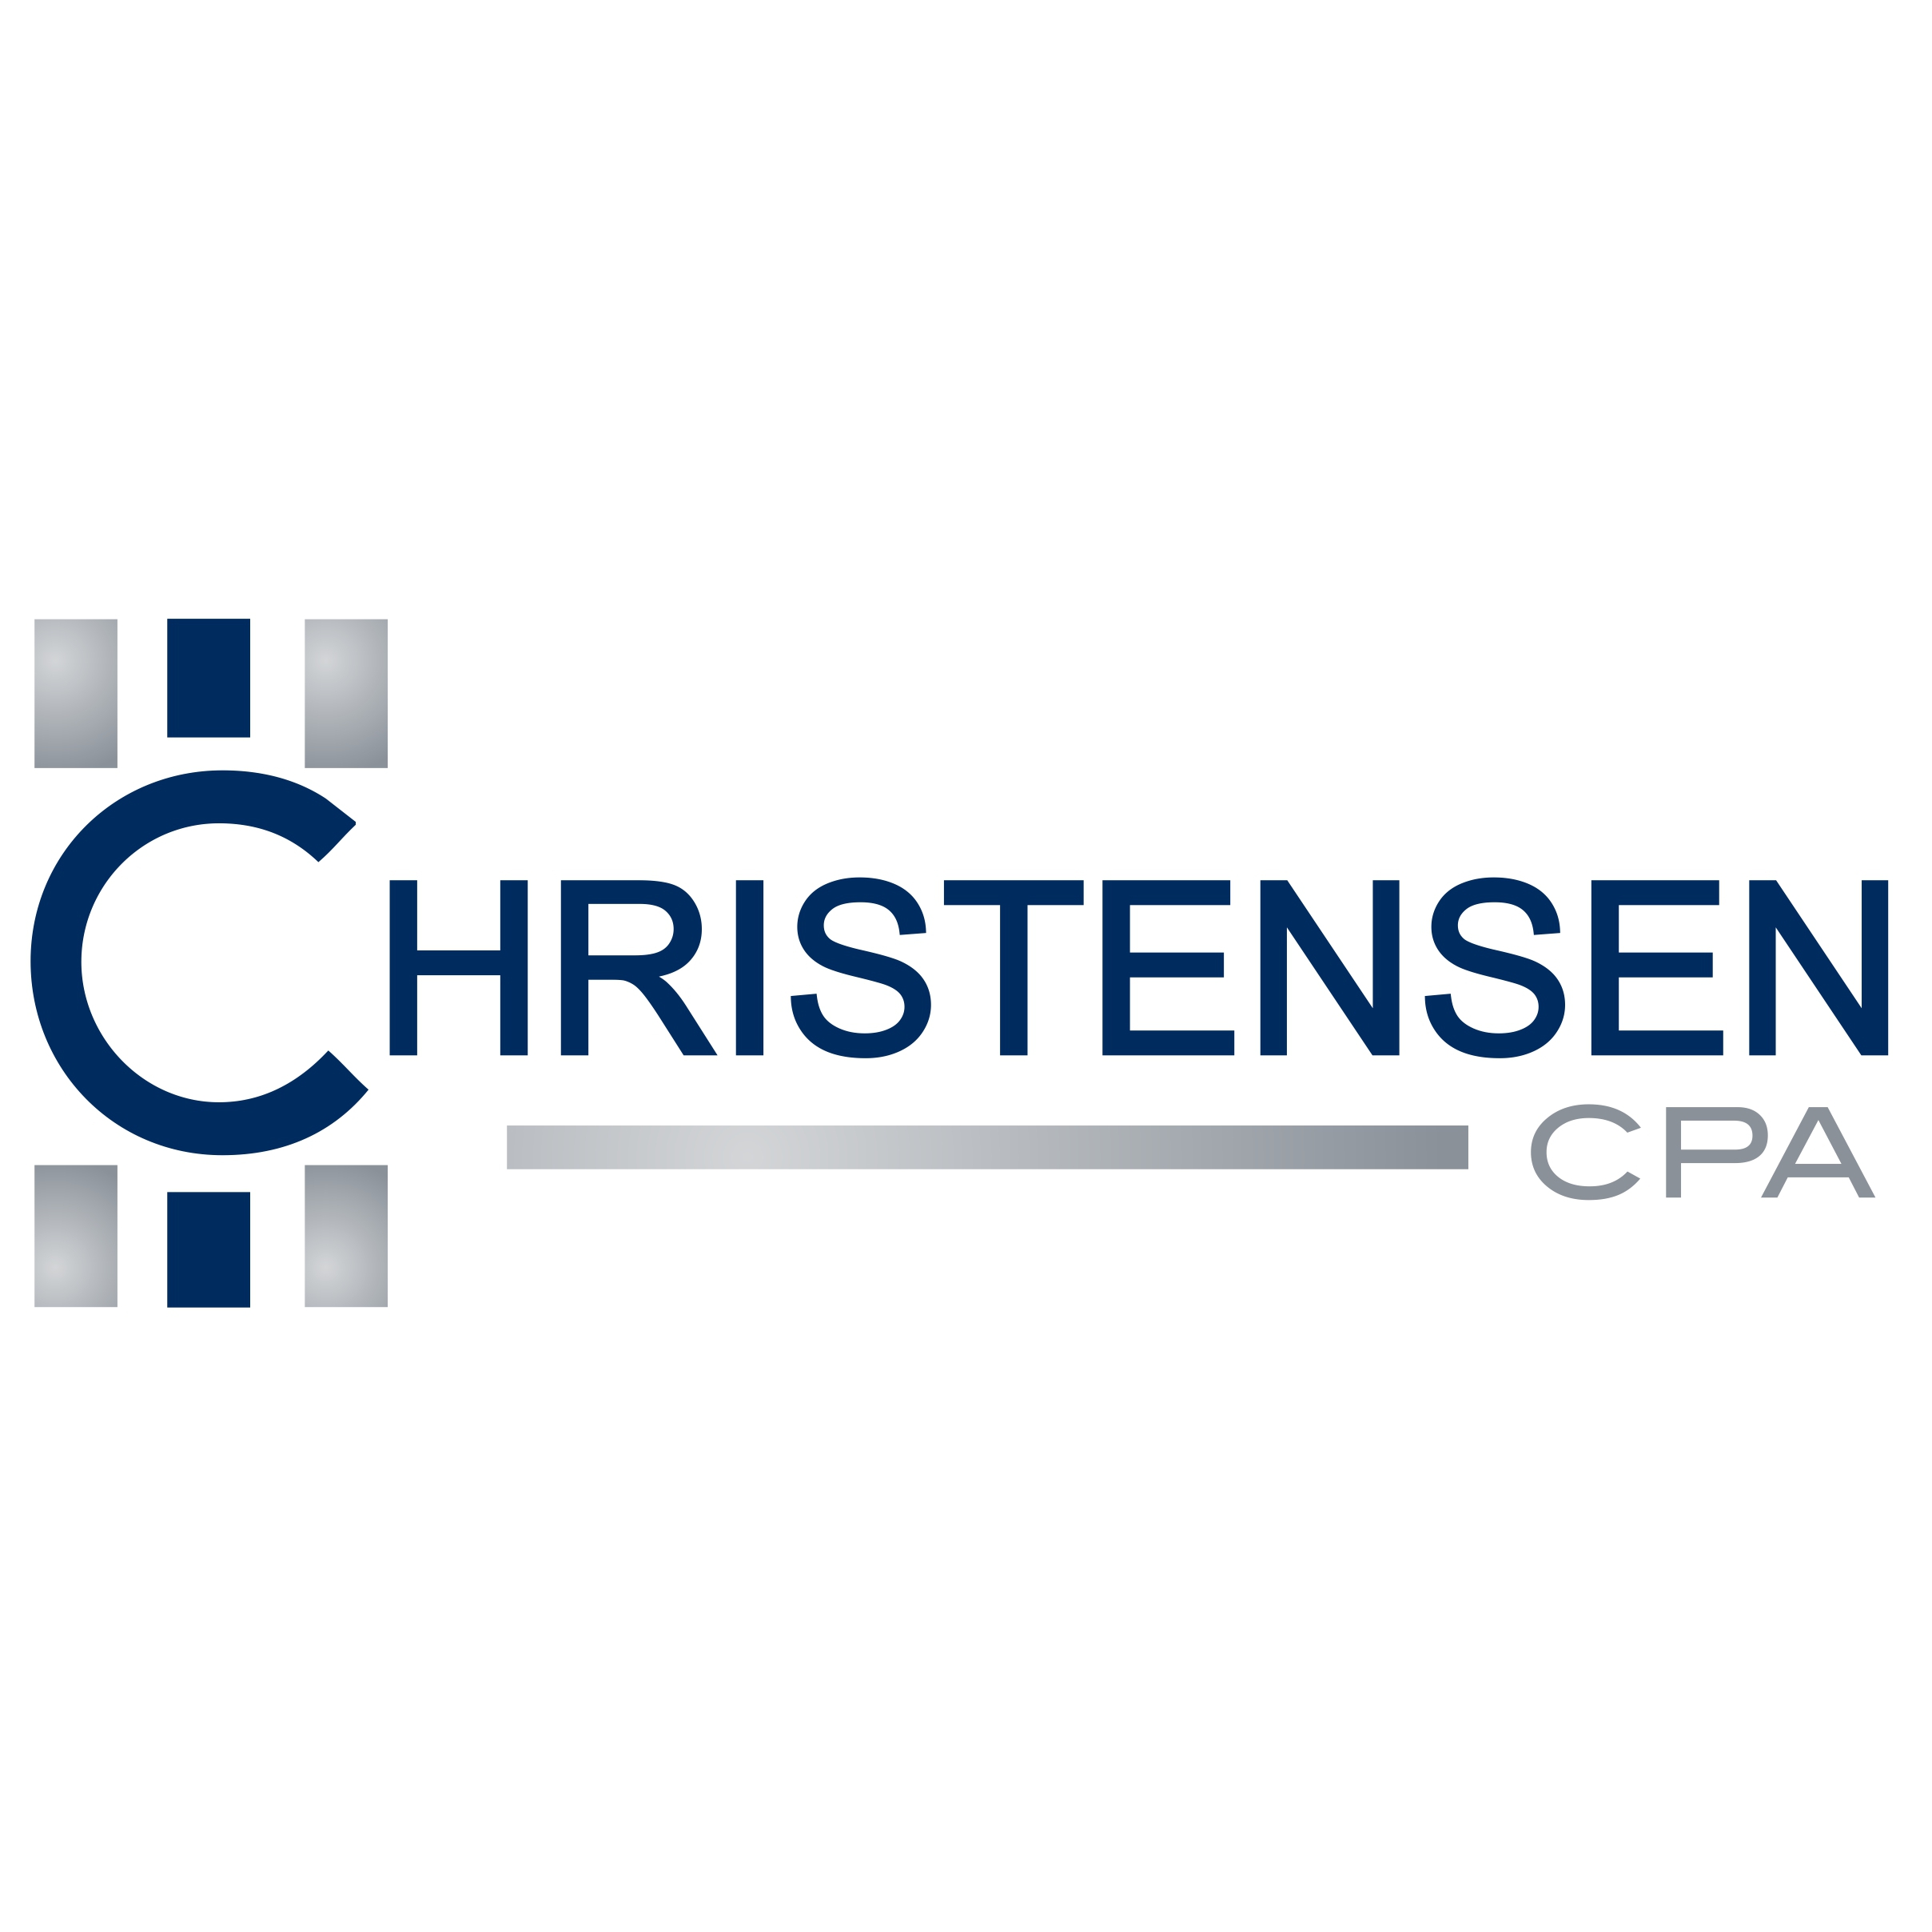 Christensen CPA Photo